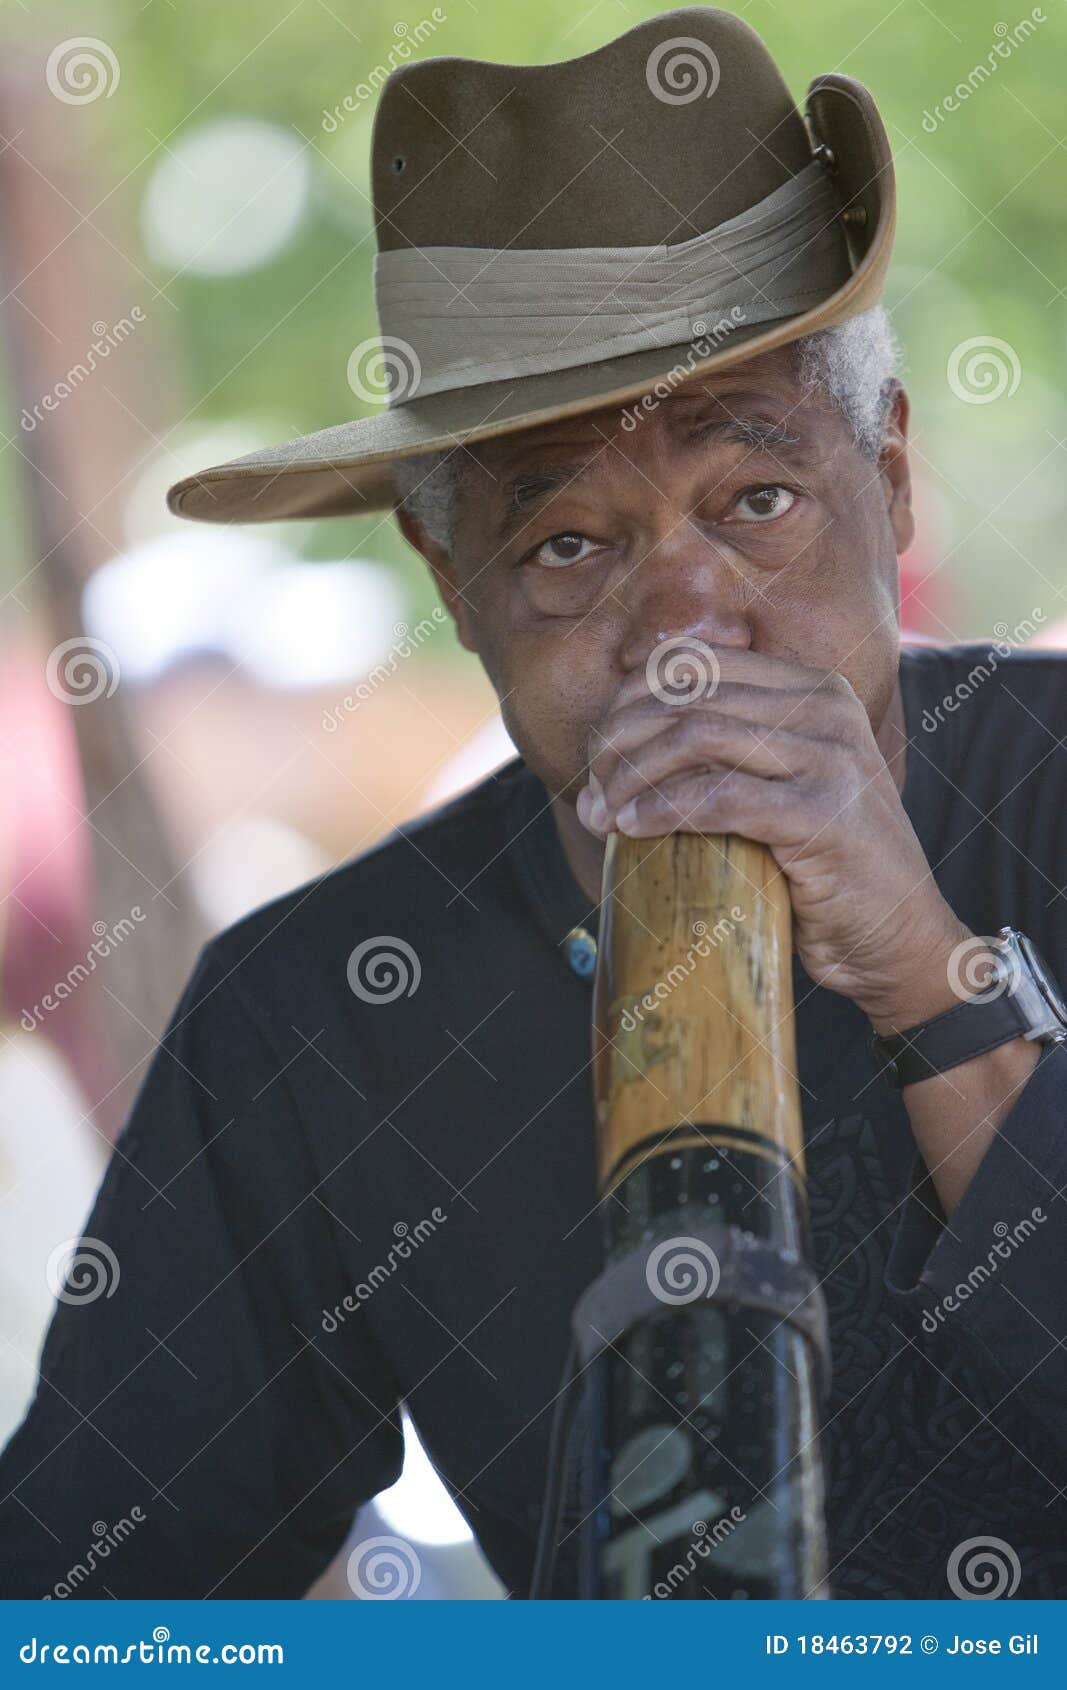 Didgeridoo Man Editorial Photography - didgeridoo-man-18463792